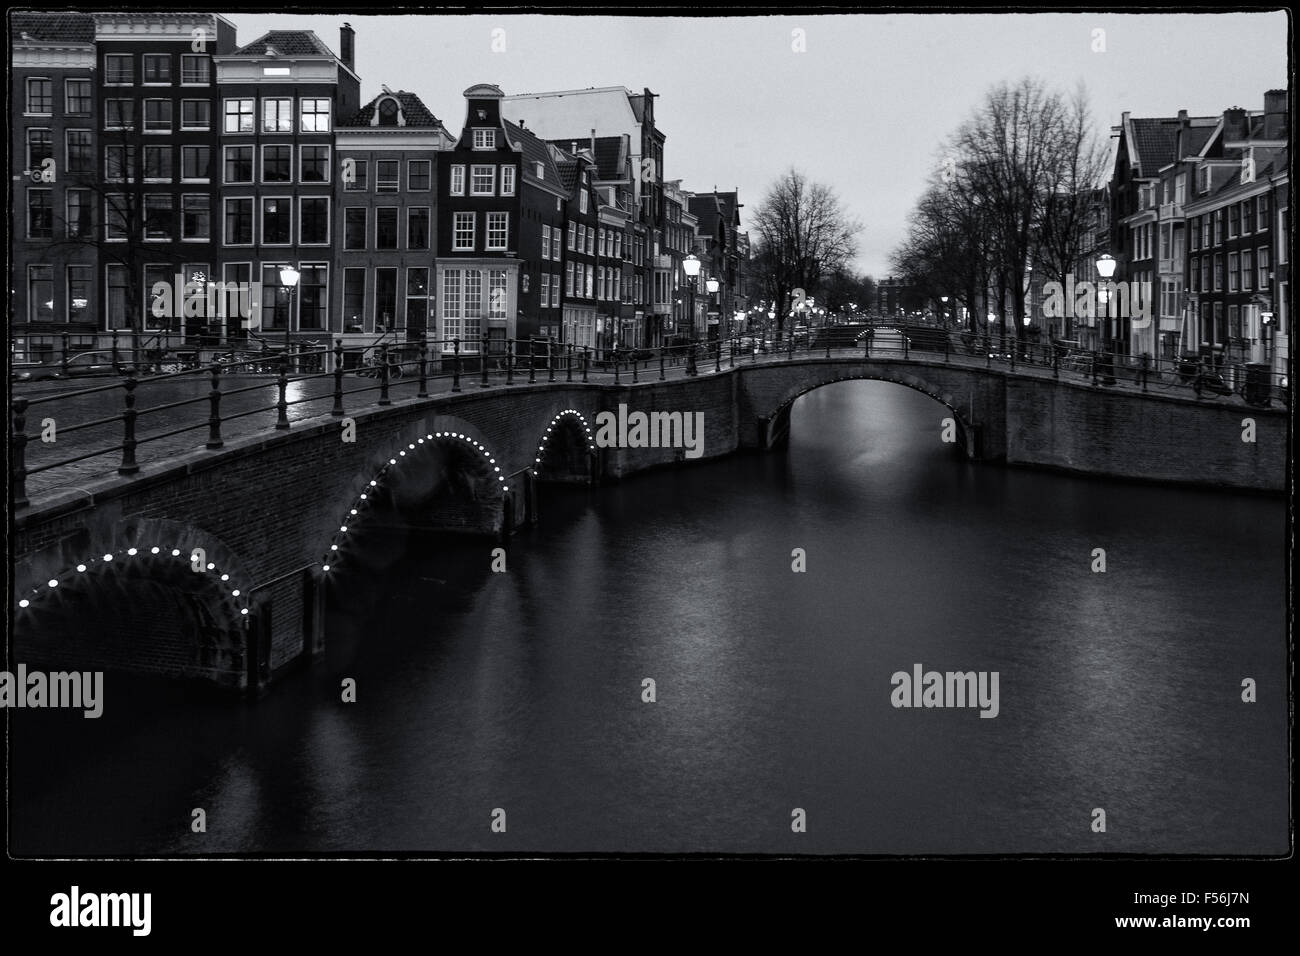 Immagine in bianco e nero con i famosi ponti e canali di Amsterdam dopo il tramonto, una lunga esposizione l'immagine orizzontale. Foto Stock